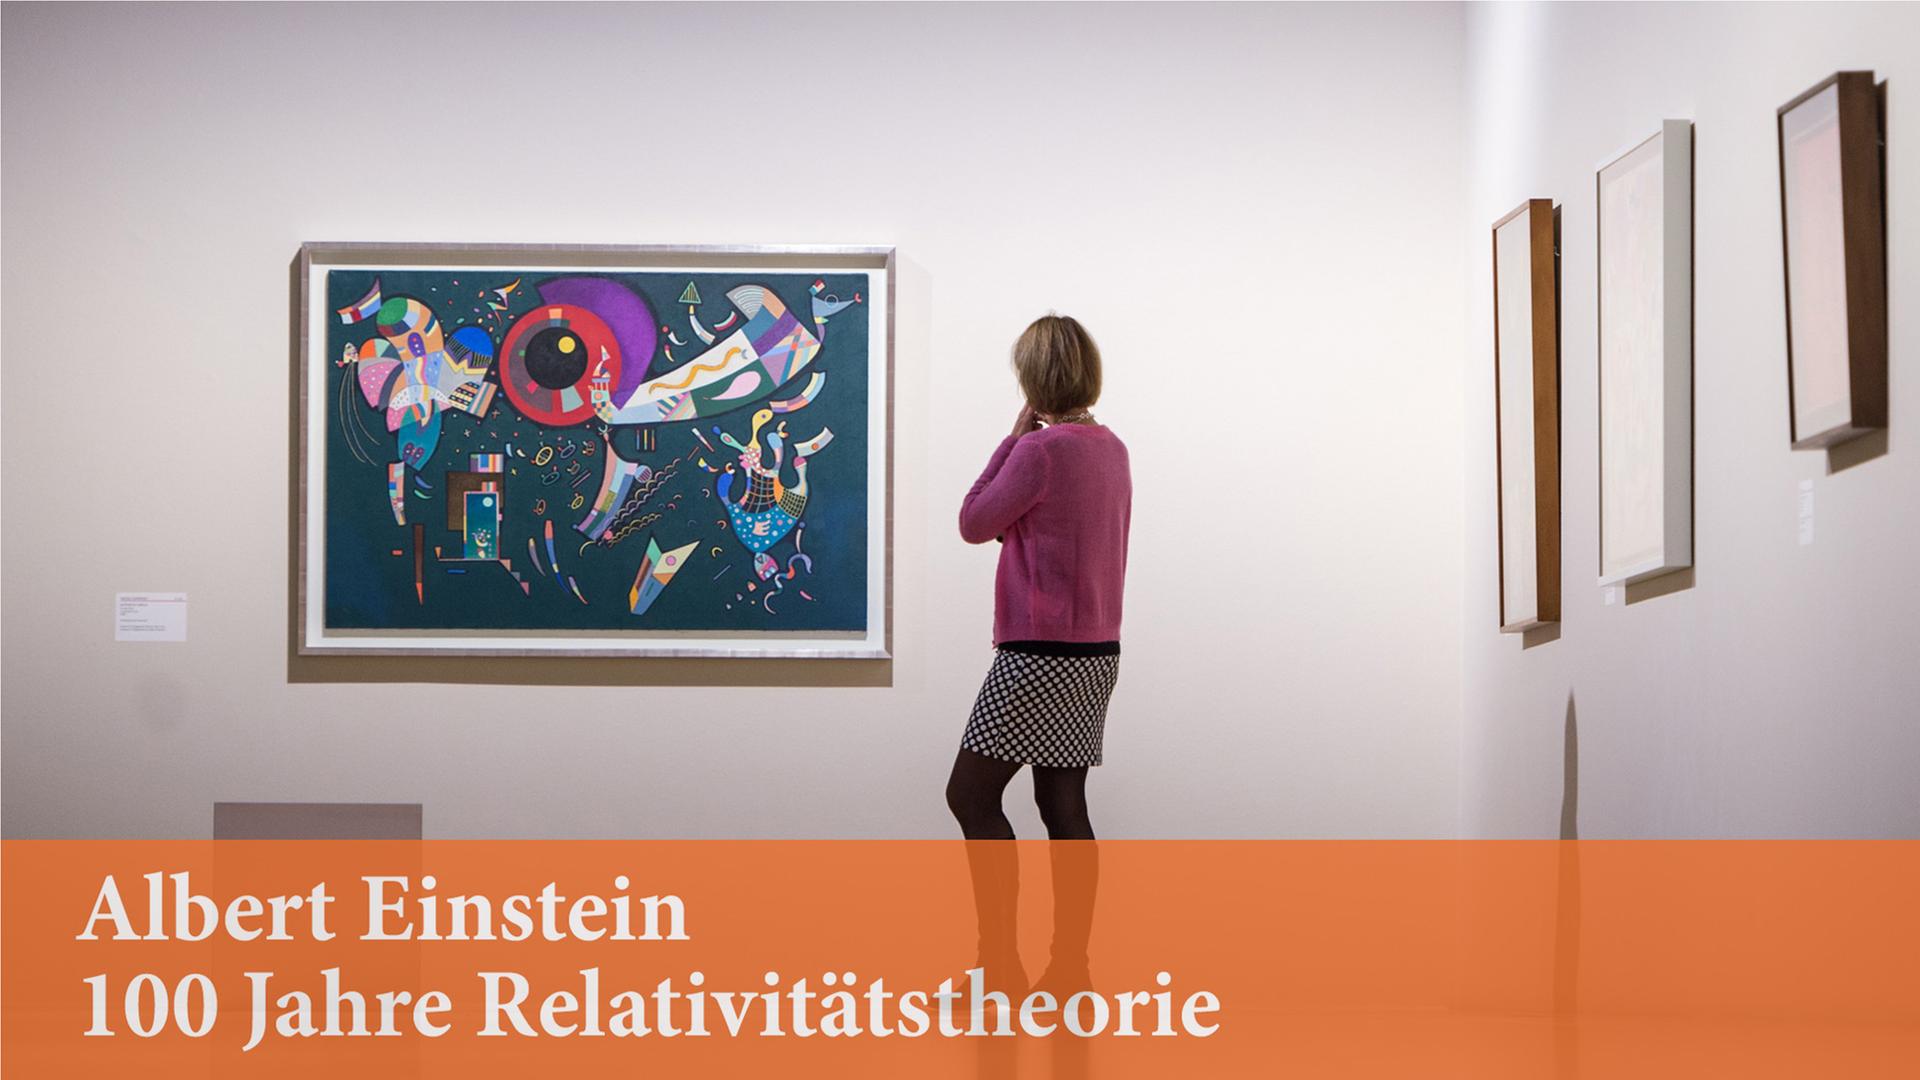 Oktober 2015: Eine Frau betrachtet in der Ausstellung "Klee & Kandinsky" im Kunstbau der Städtischen Galerie im Lenbachhaus in München das Kunstwerk "Autour du cercle" von Wassily Kandinsky aus dem Jahr 1940.